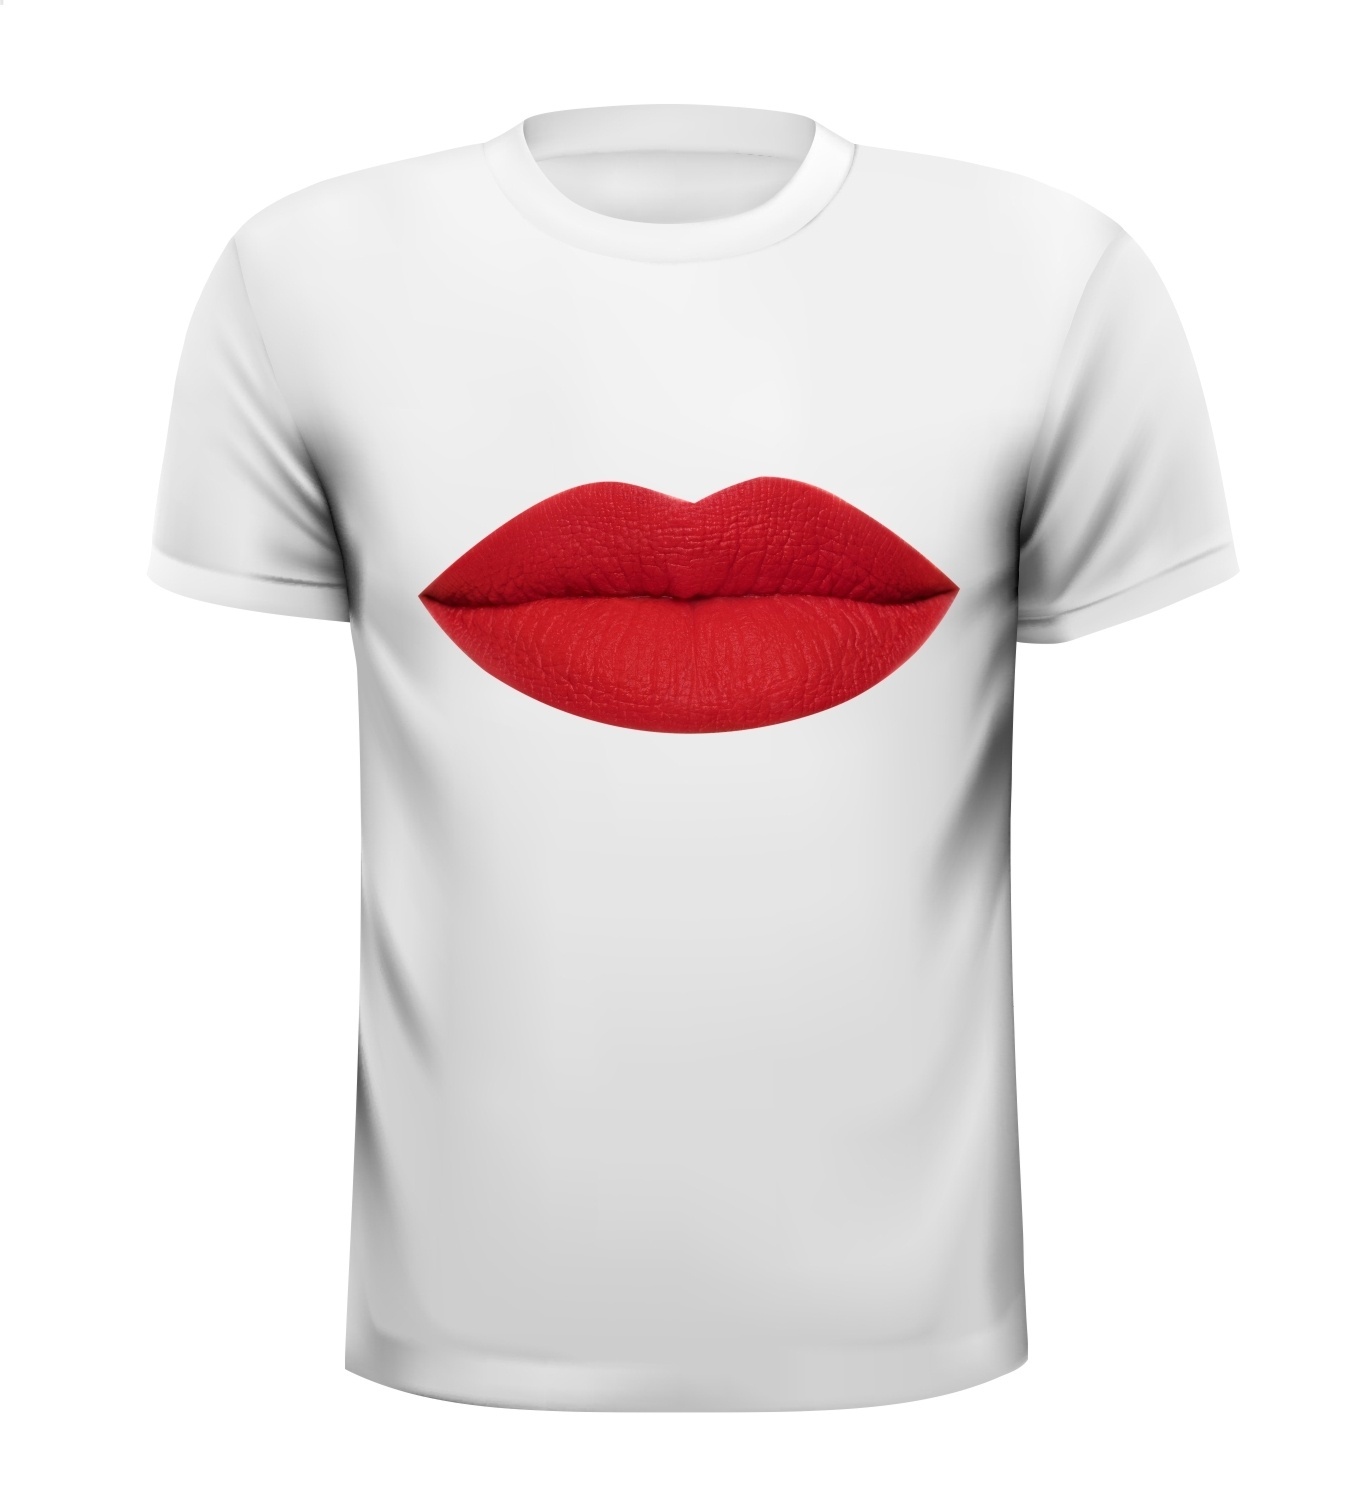 Rode lippen lippenstift vrouwen lippen shirt